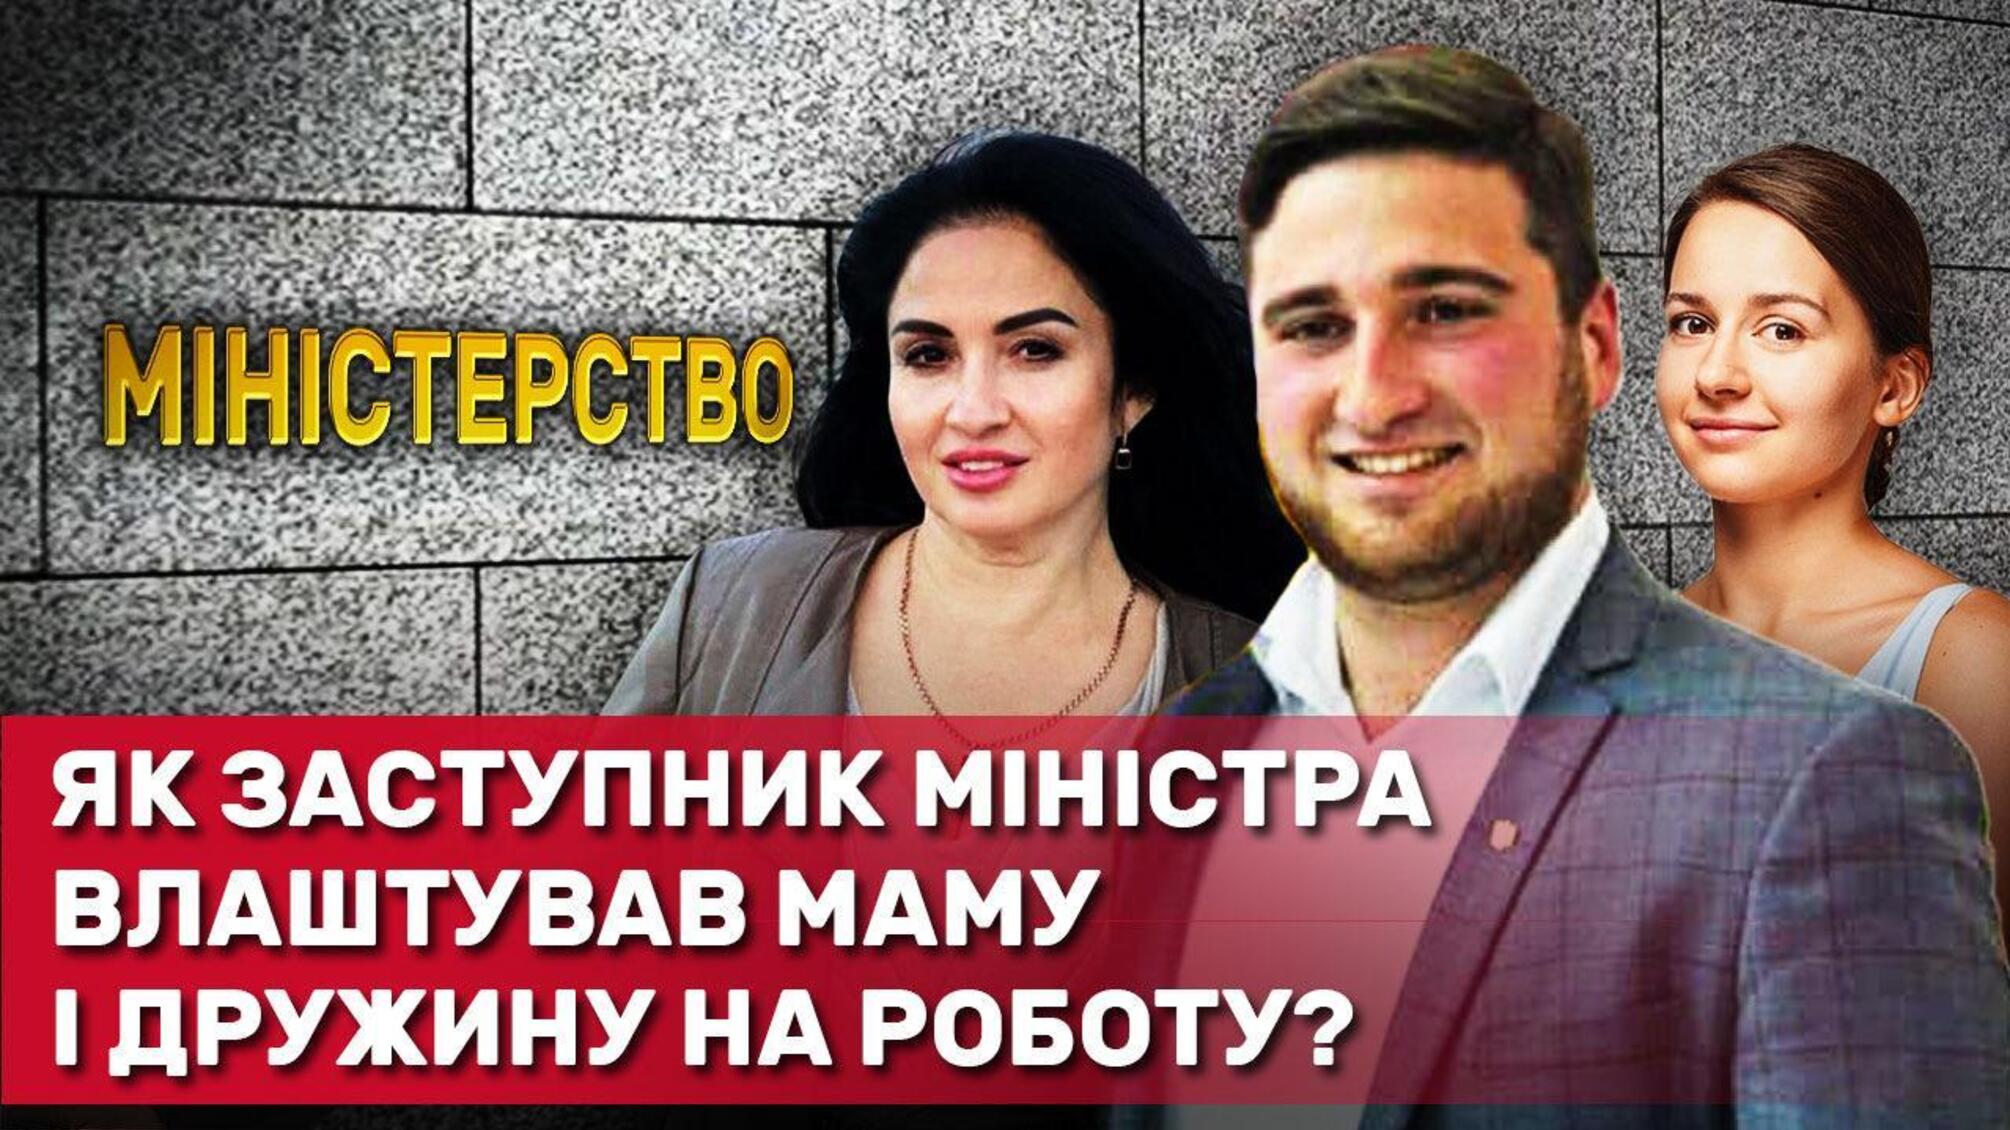 'Сімейний підряд': заступник міністра освіти Кудрявець працевлаштував дружину і матір у МАН?